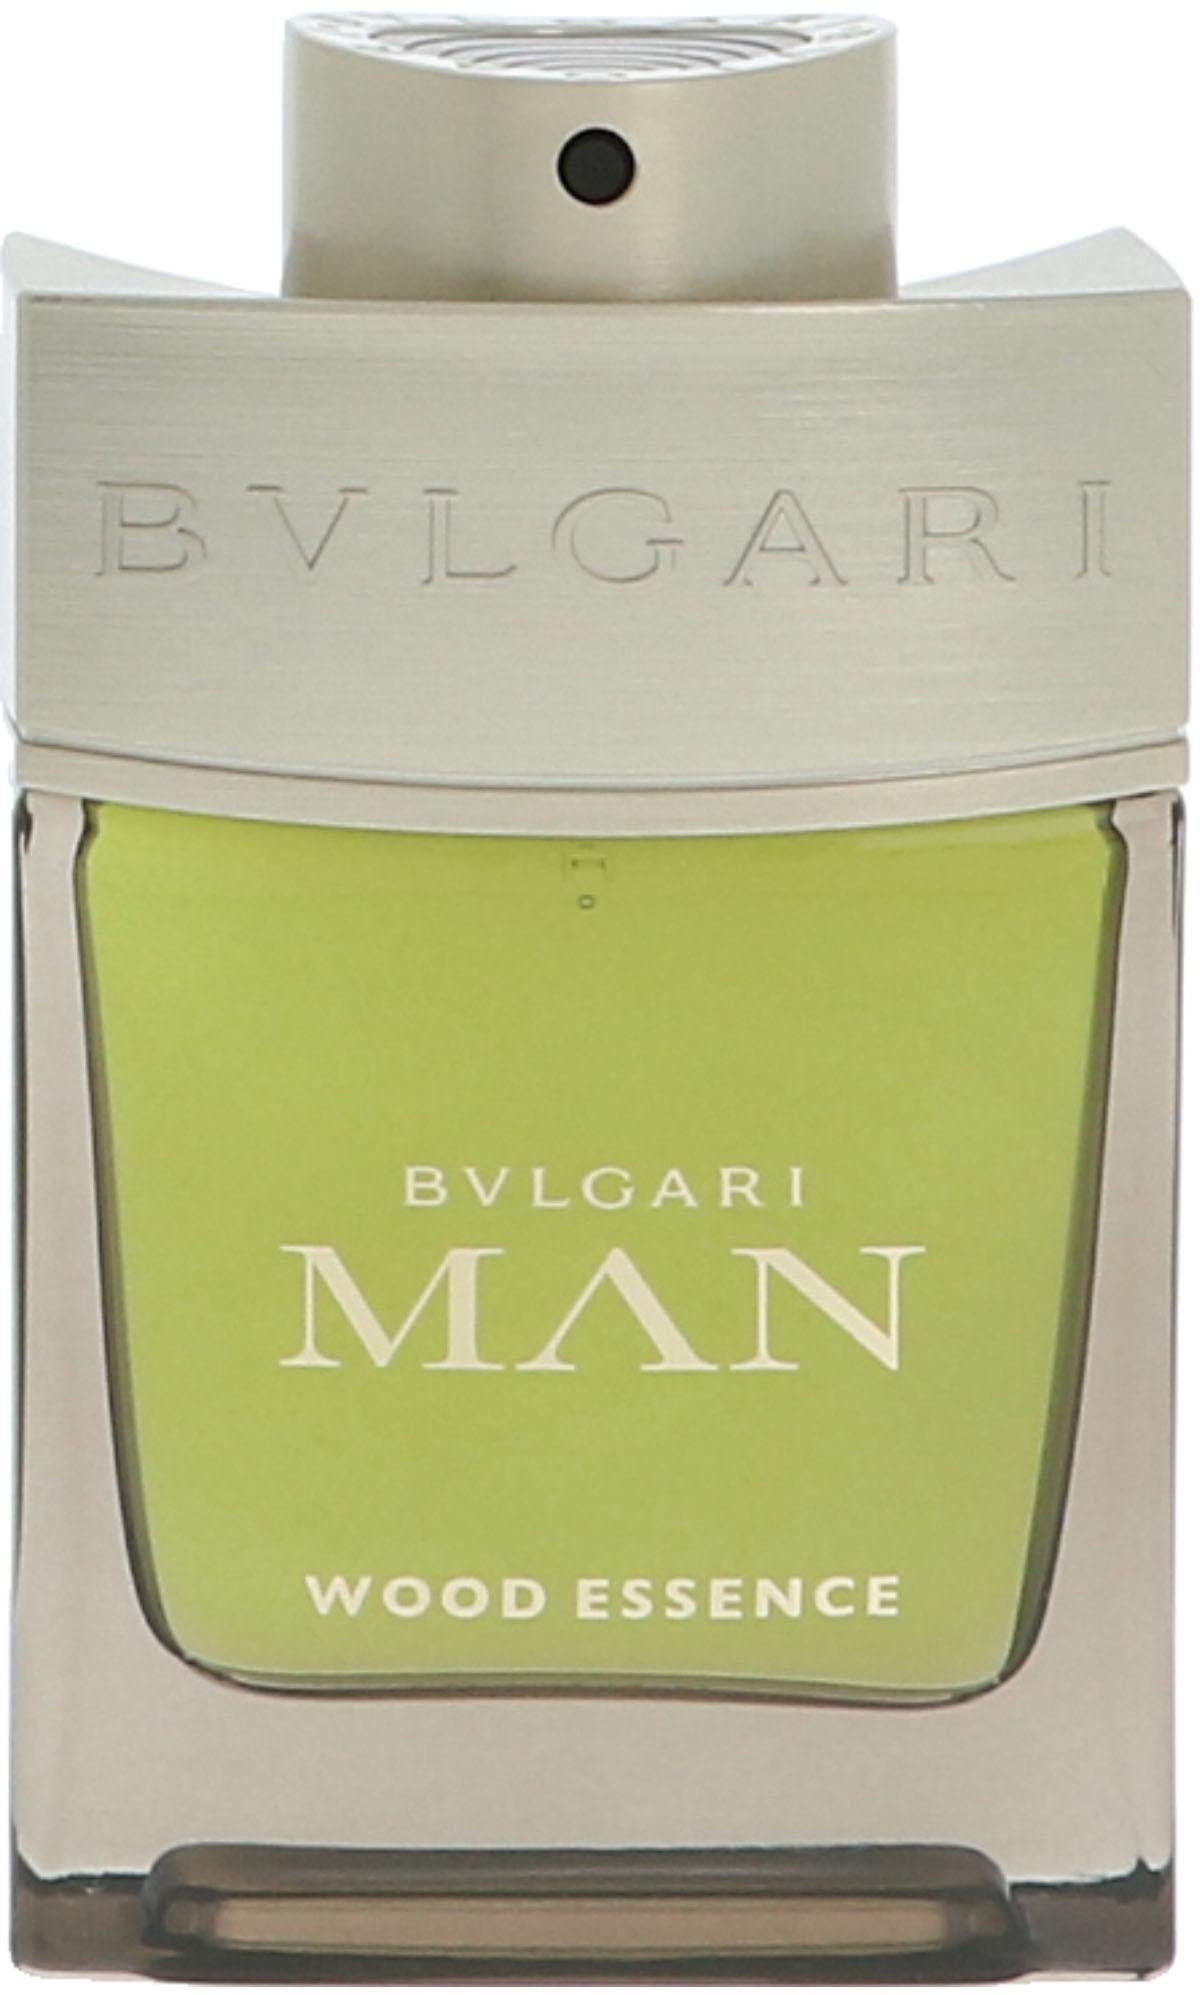 BVLGARI Eau de Parfum Wood Essence